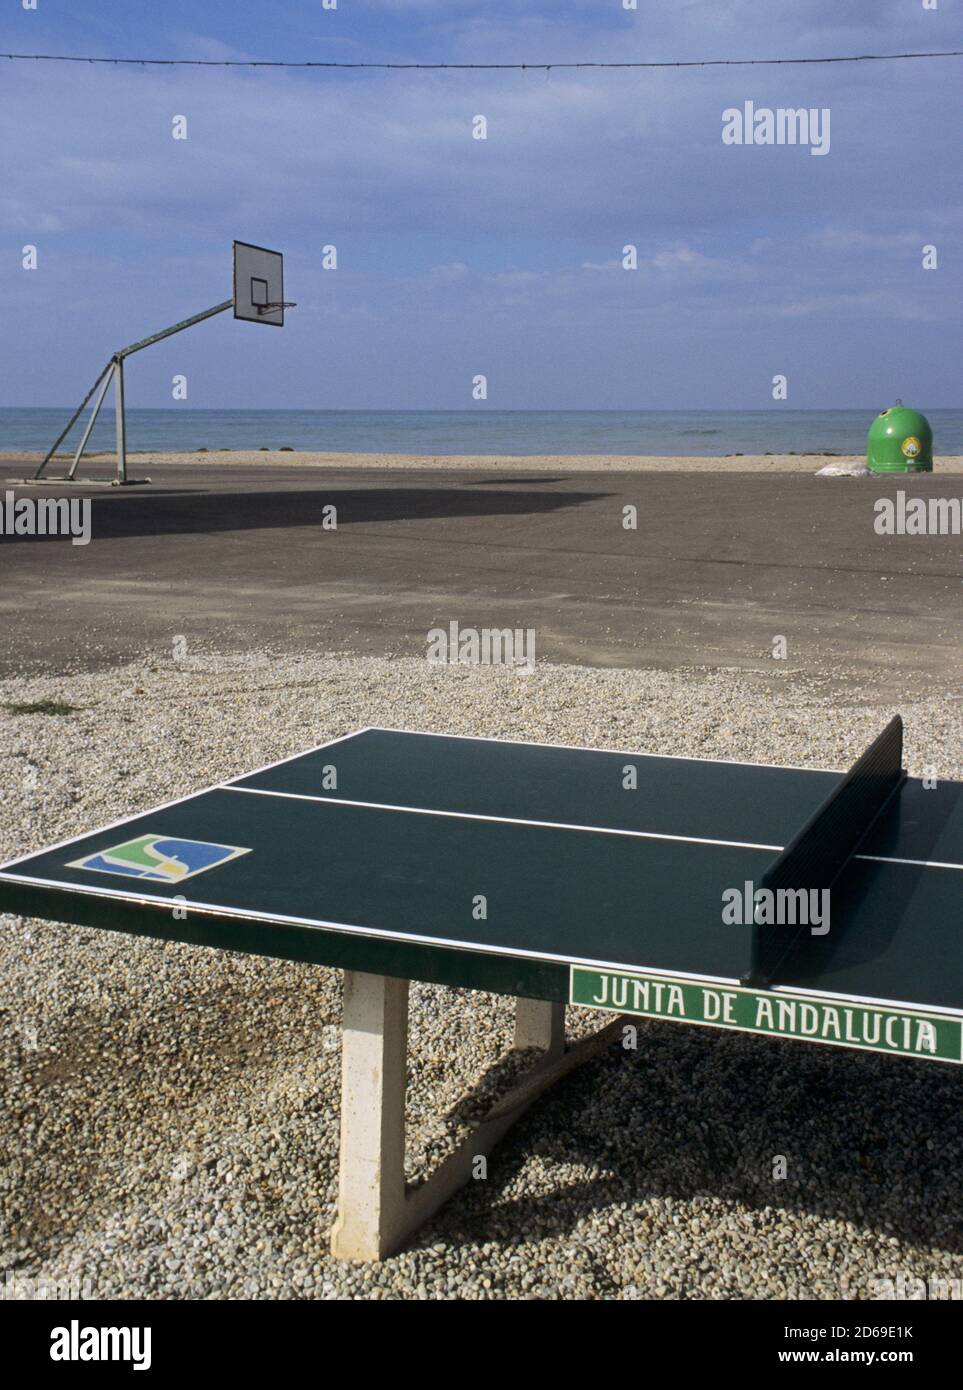 Table de ping-pong dans une aire de jeux déserte, Costa de Almeria, Andalousie, Espagne Banque D'Images